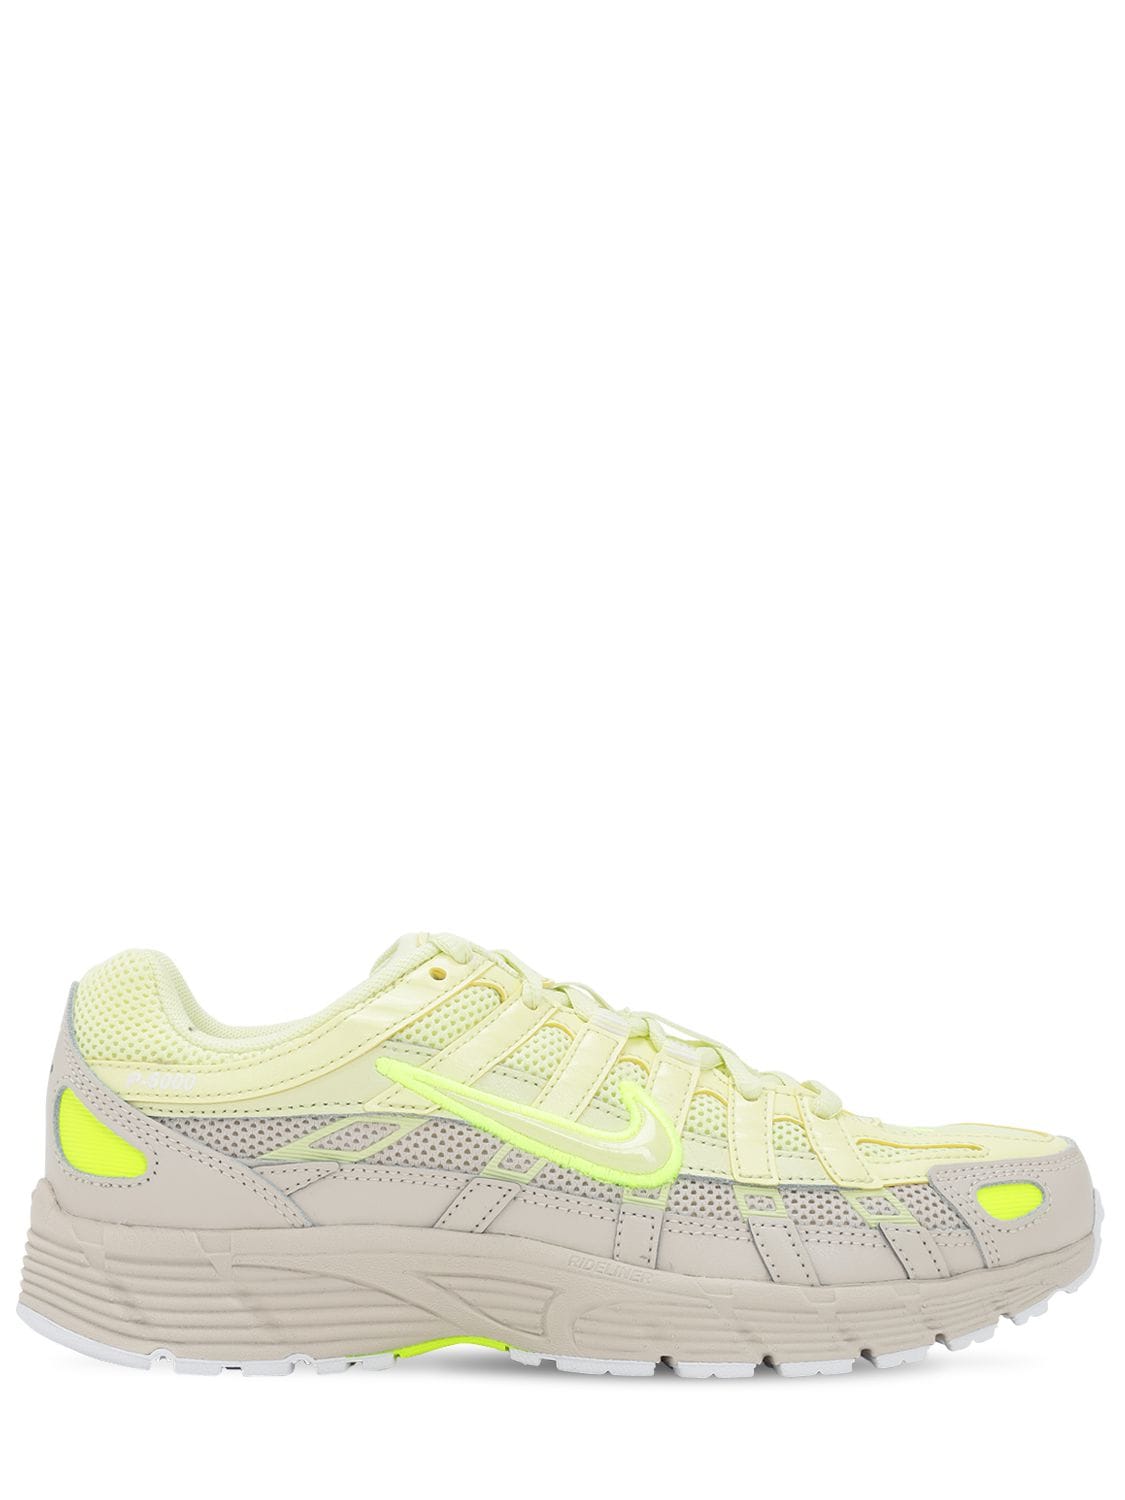 Nike P 6000 Sneakers In Yellow